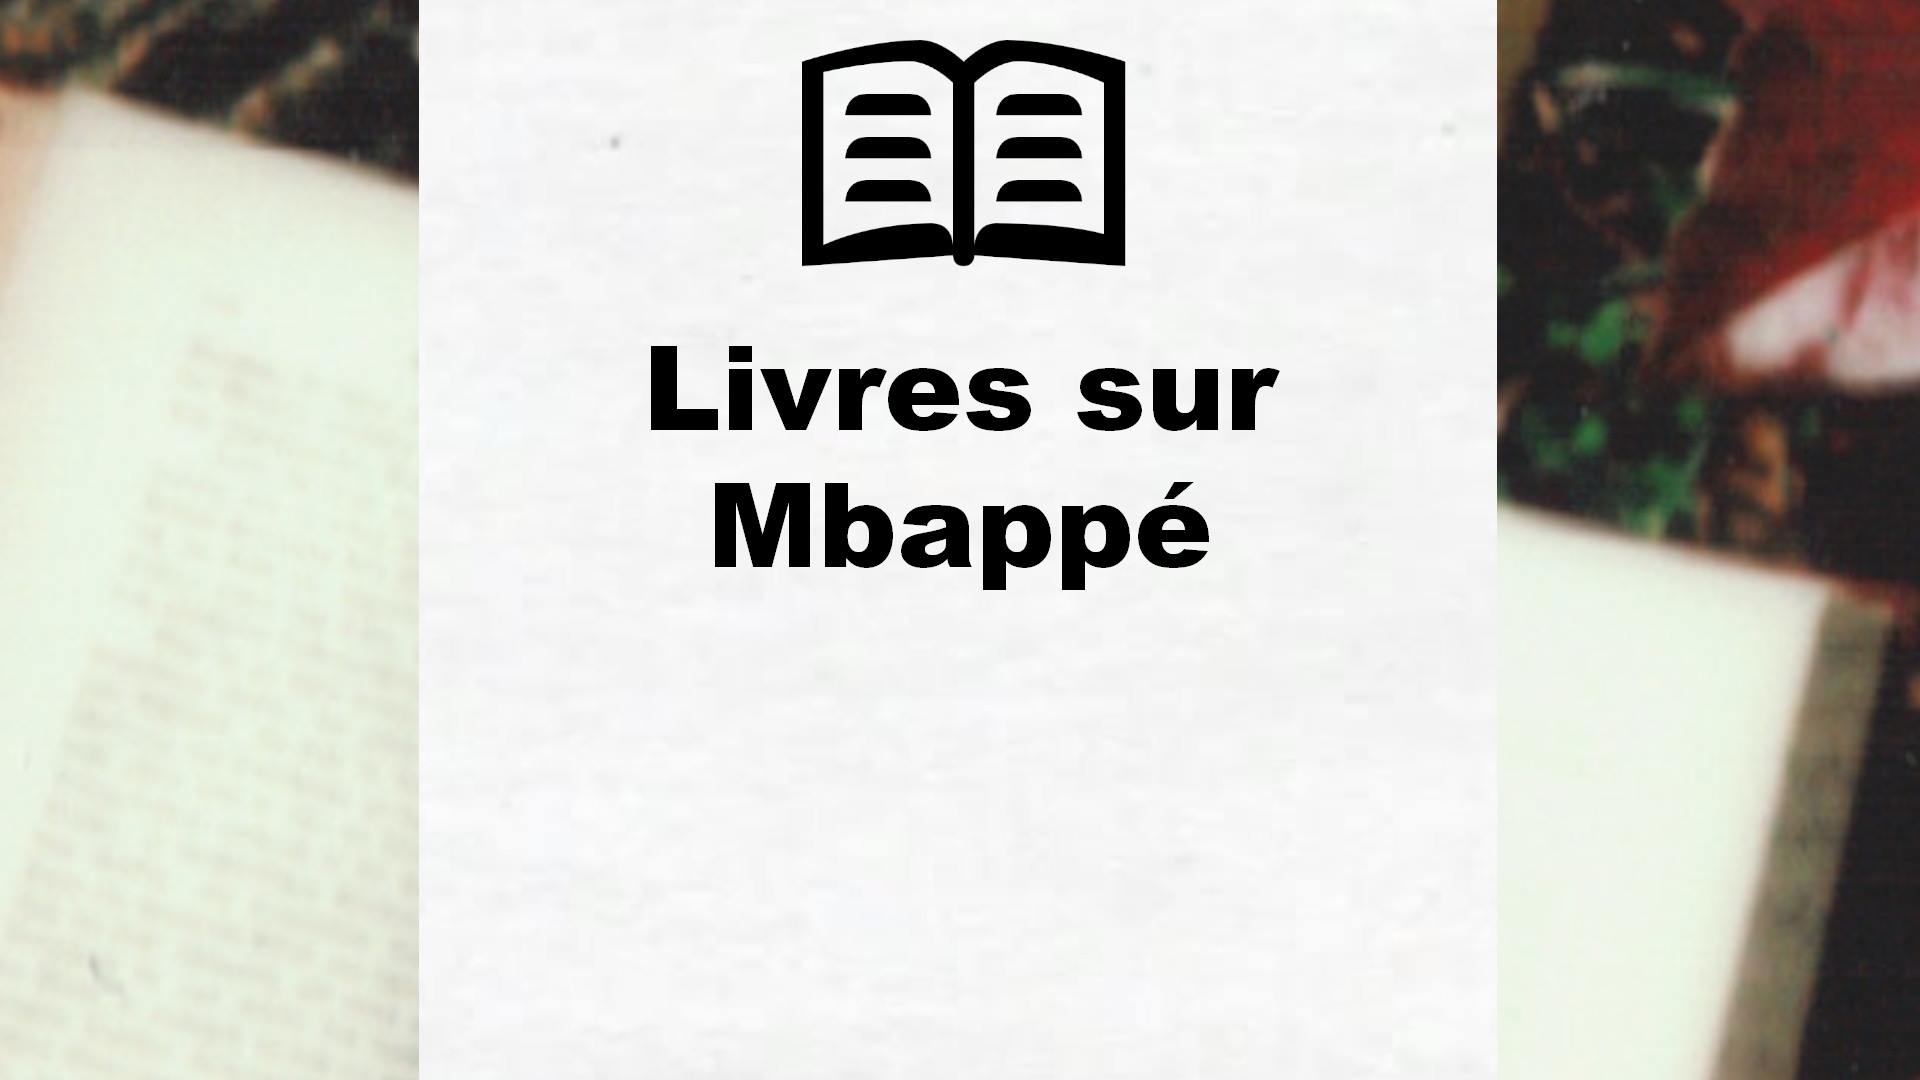 Livres sur Mbappé